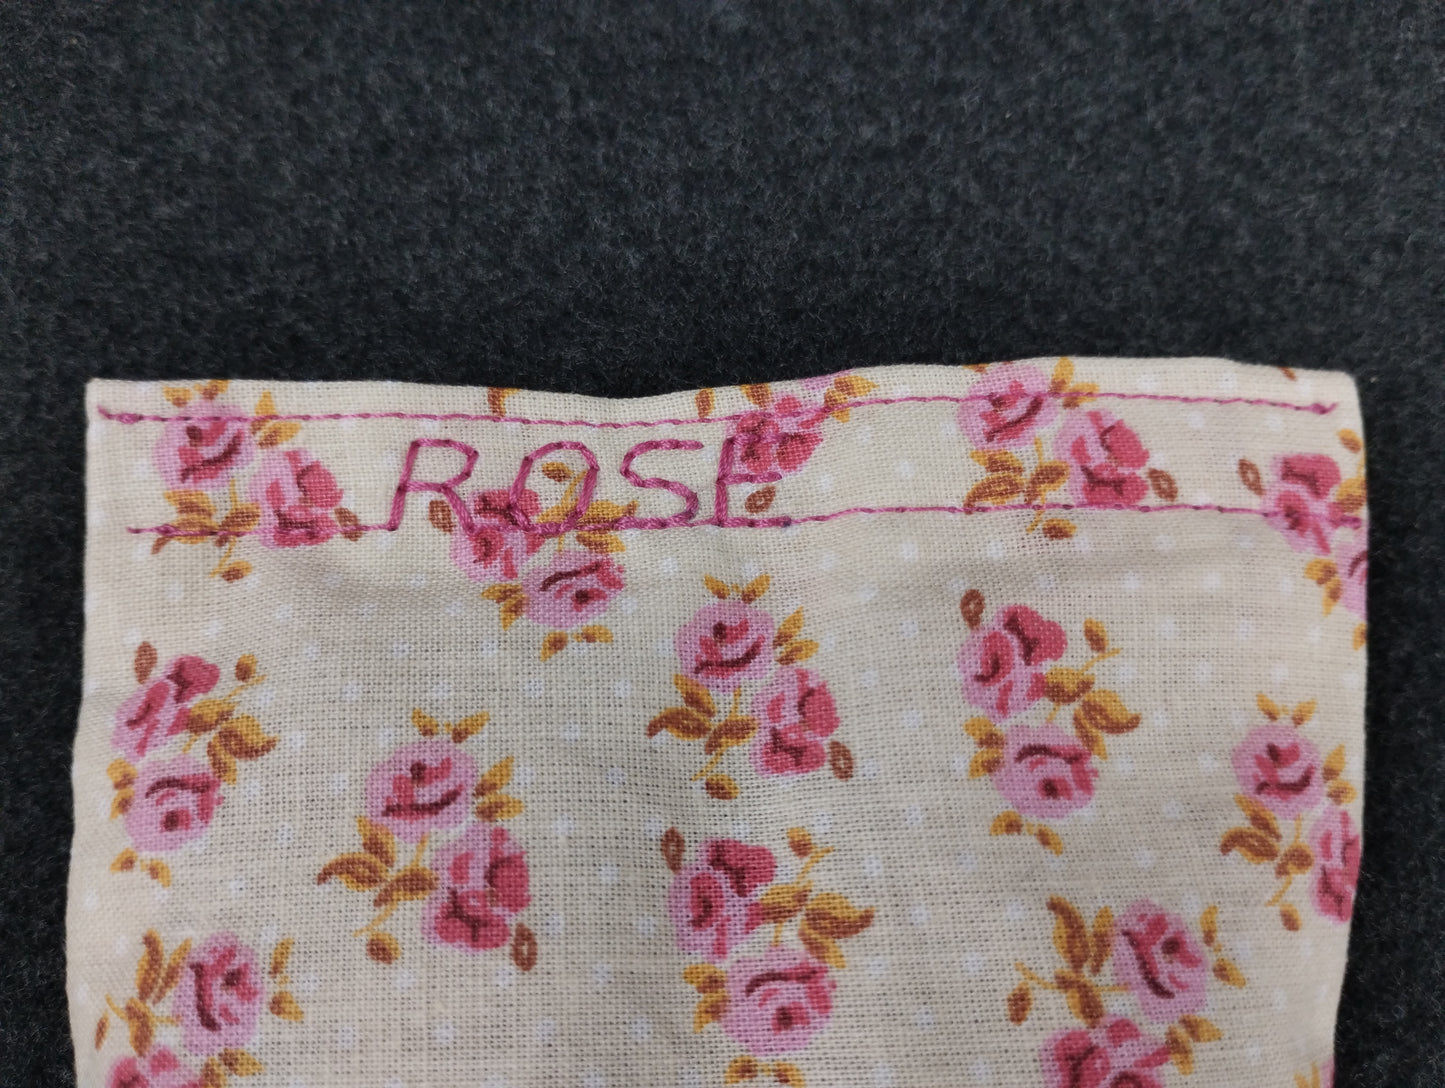 fertiges Duftkissen mit kleinen rosa Rosen auf beigem Hintergrund. Personalisiert mit dem Wort ROSE in rosa